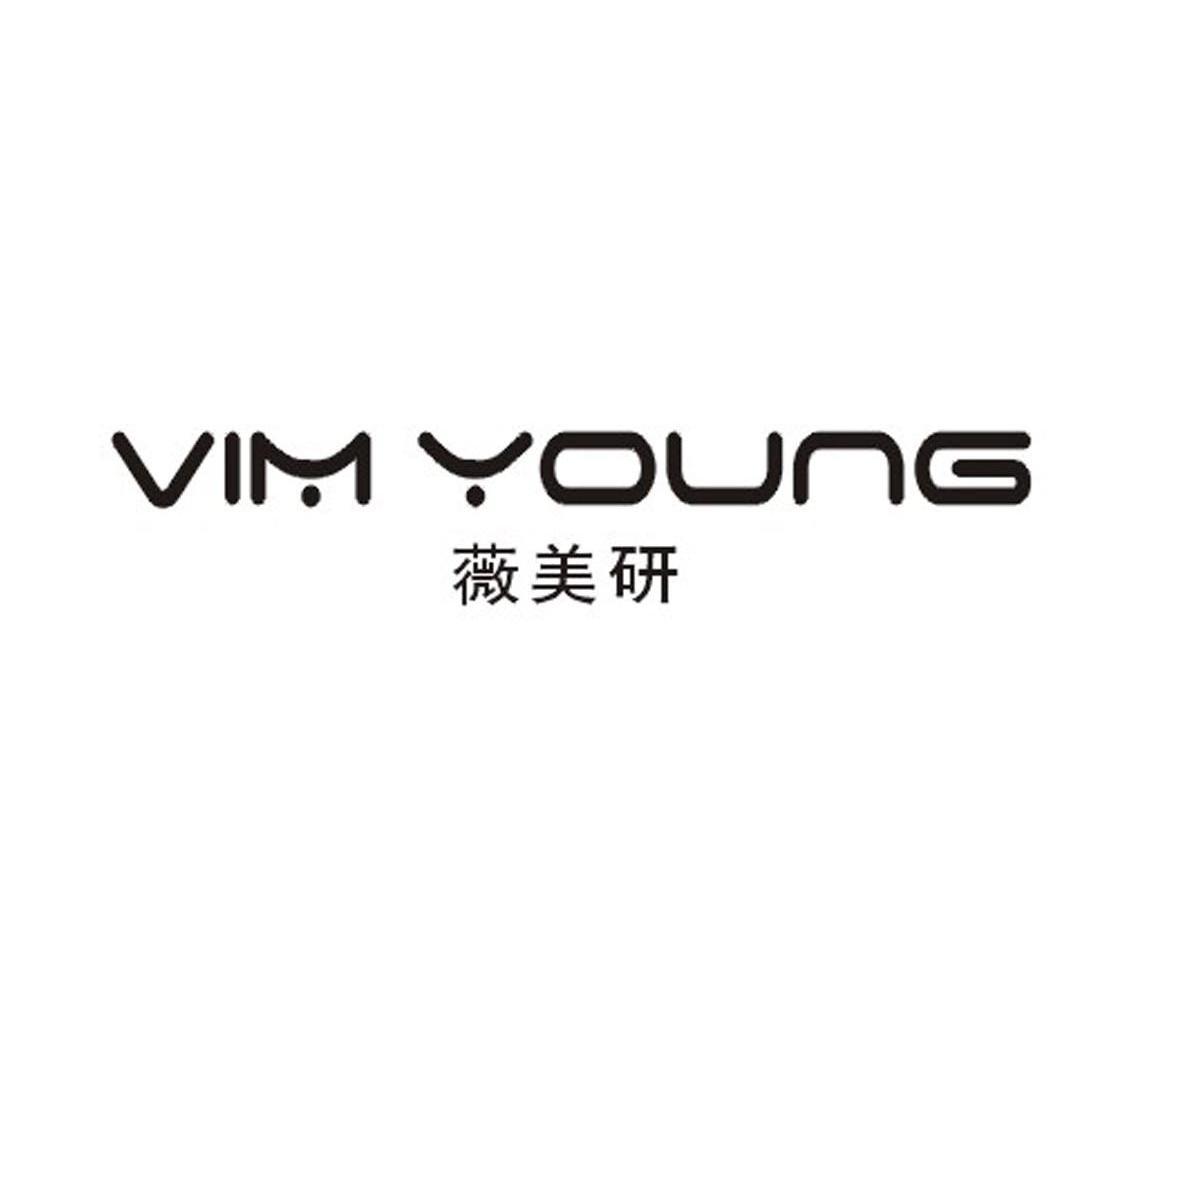 18类-箱包皮具薇美研 VIM YOUNG商标转让